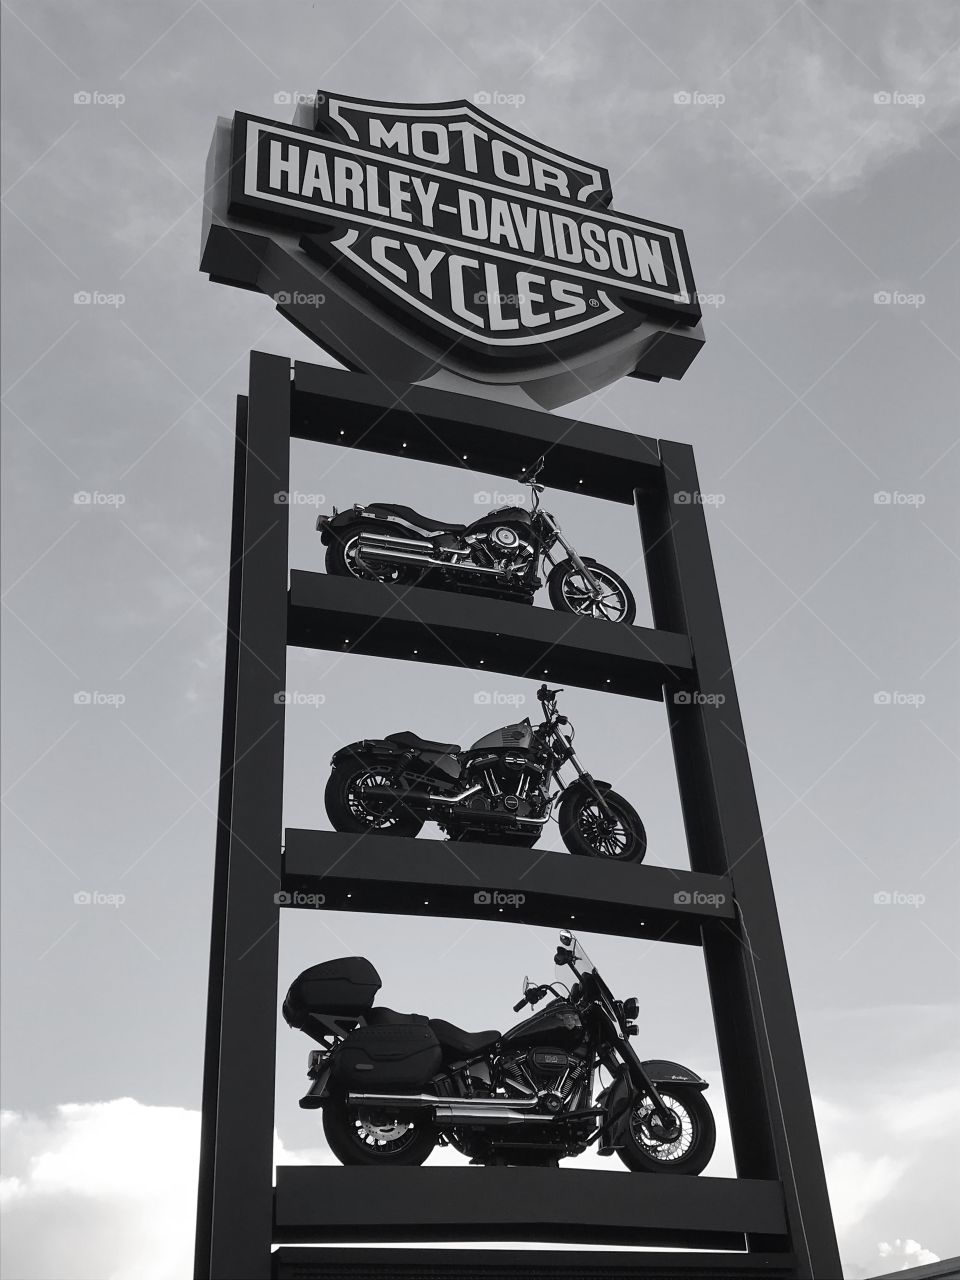 Harley bike 